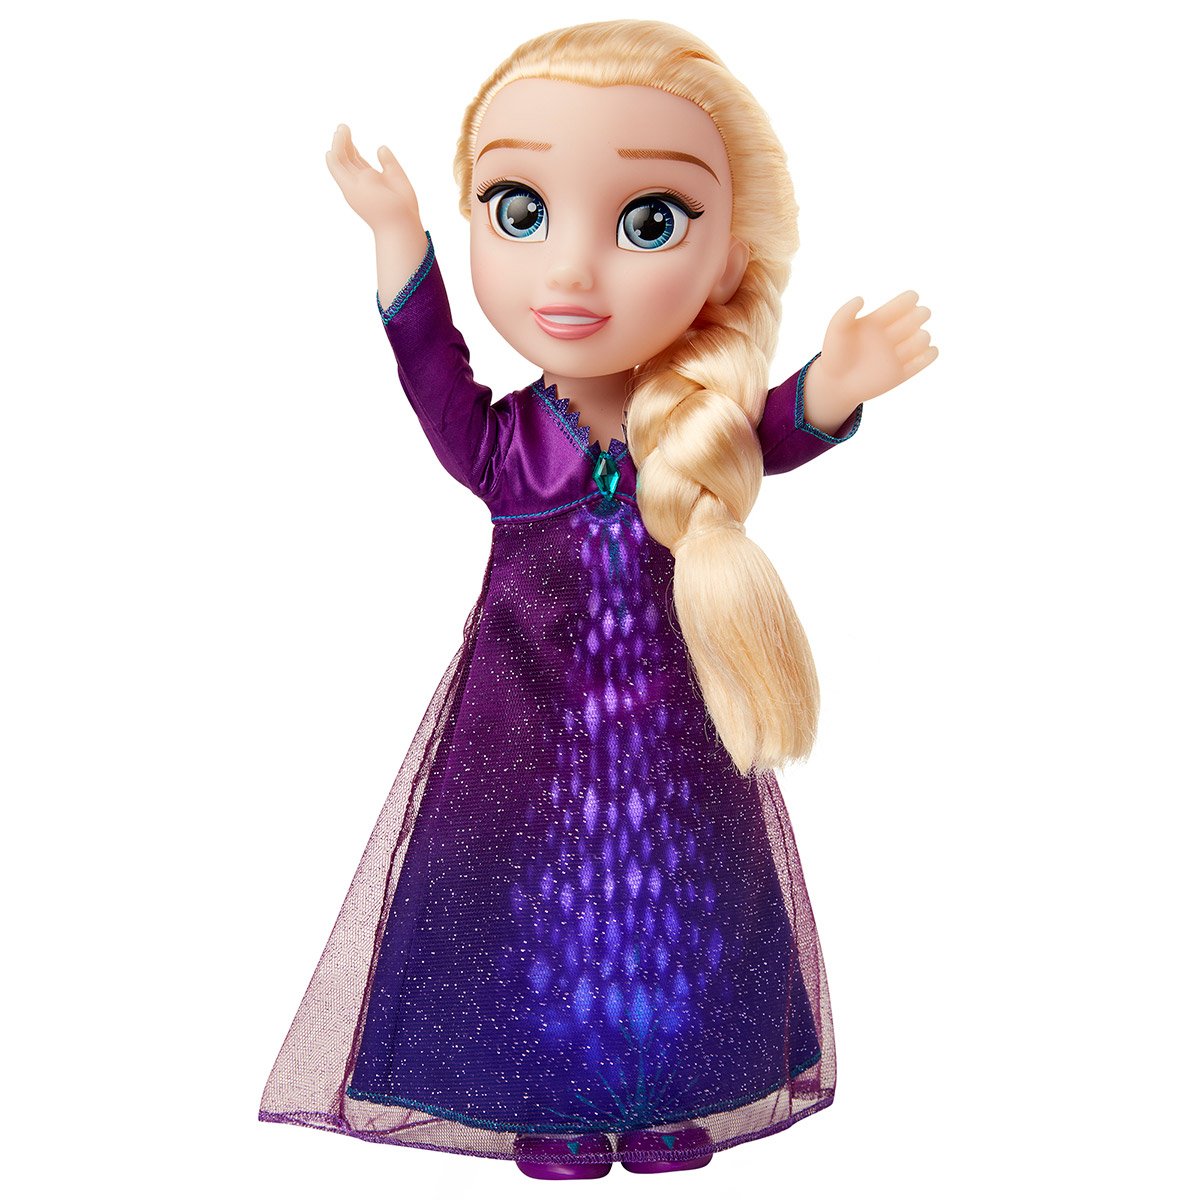 Hasbro Poupée Elsa chantante Disney La Reine des Neiges 2 la